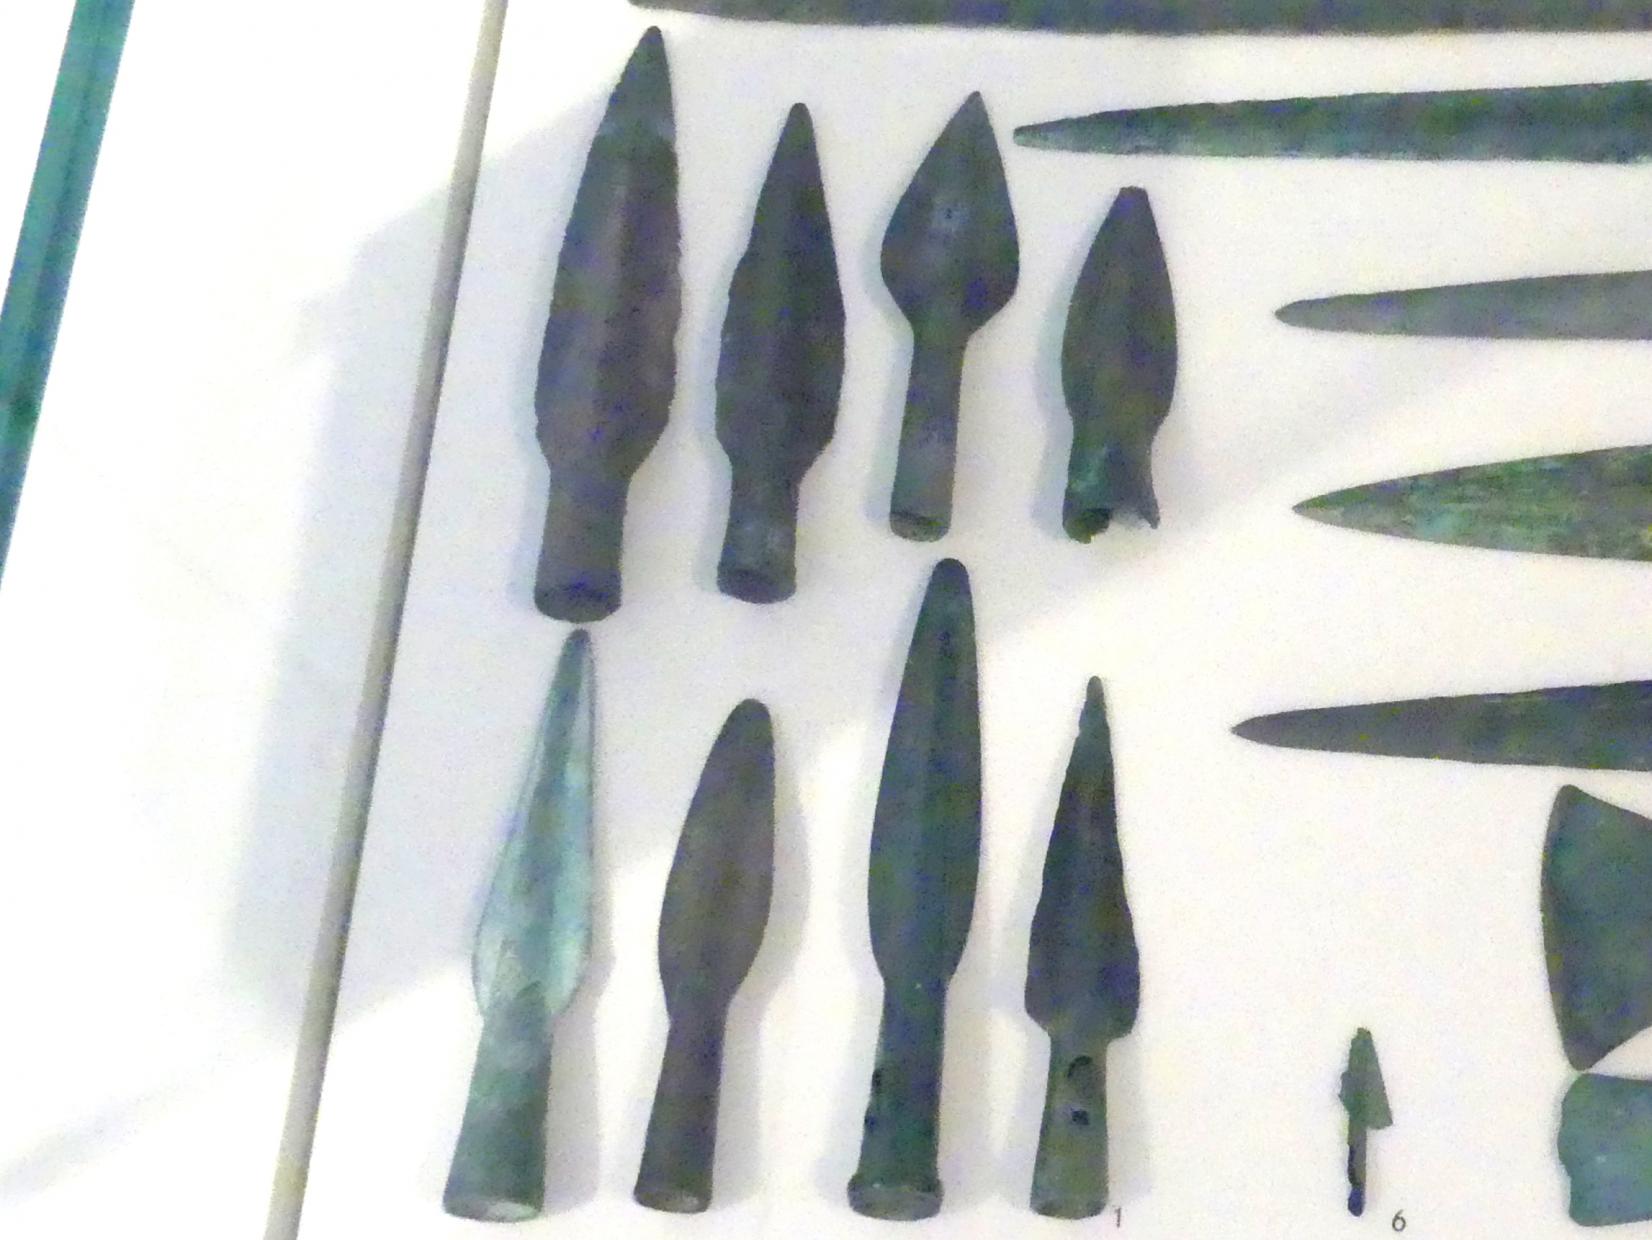 Lanzenspitzen, Späte (Jüngere) Bronzezeit, 1500 - 700 v. Chr., 1300 - 800 v. Chr., Bild 1/2